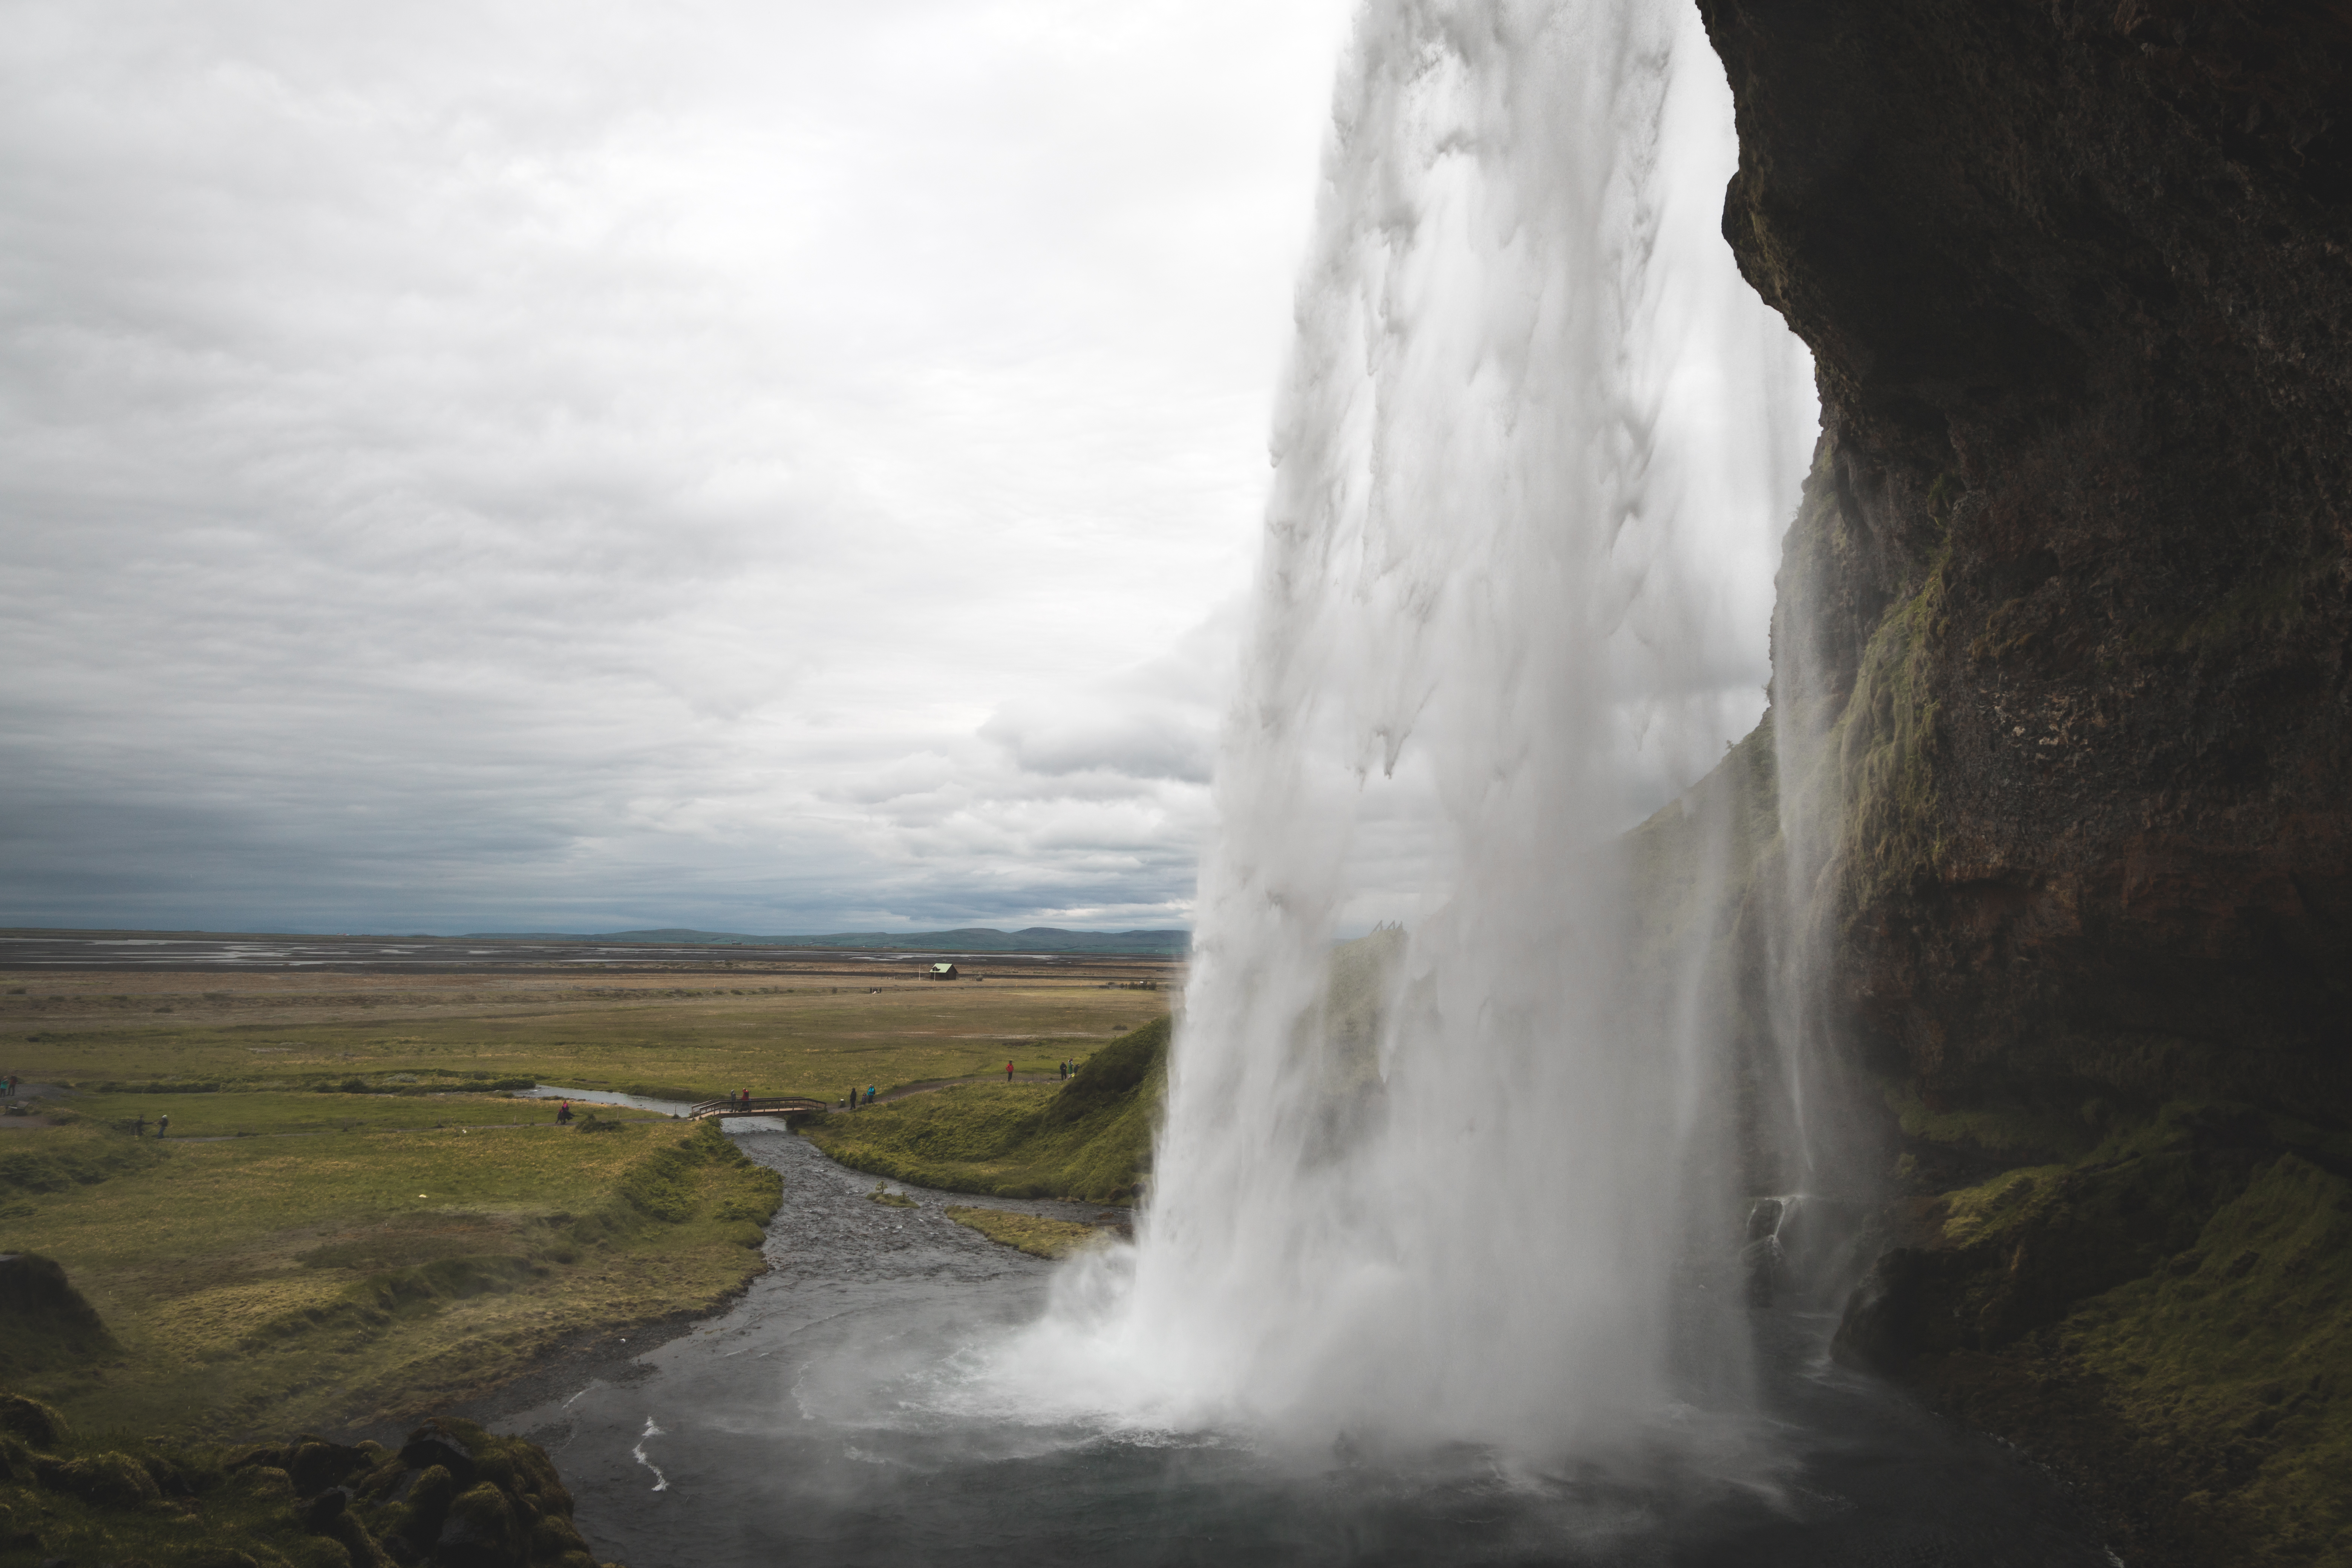 Islande | Le Cercle d'Or et les merveilles du sud - Seljalandsfoss